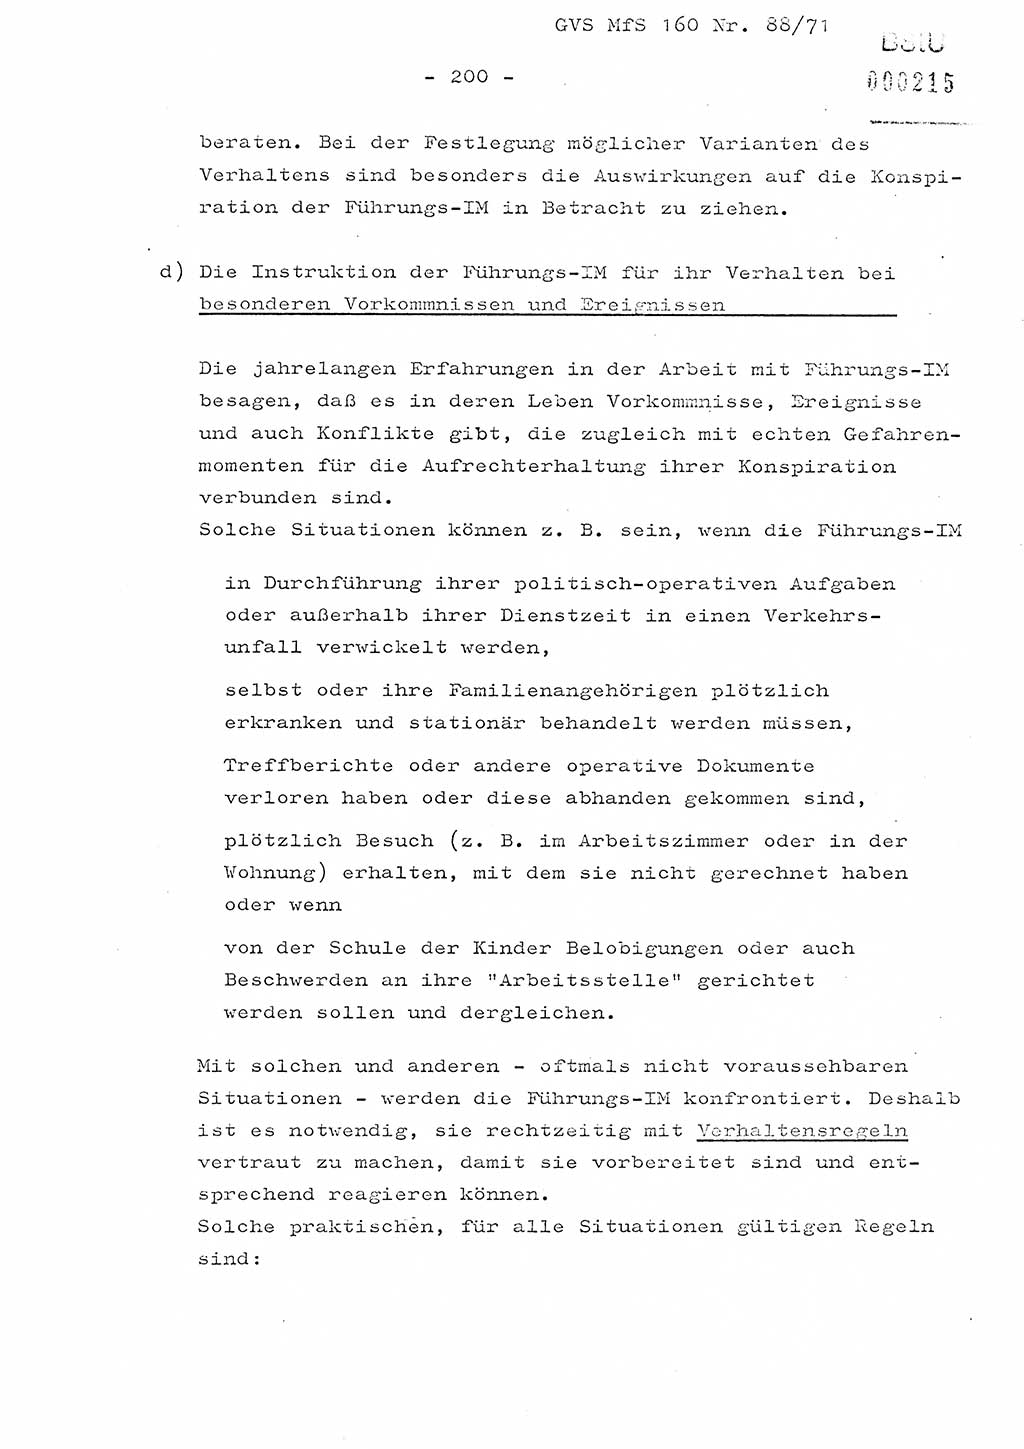 Dissertation Oberstleutnant Josef Schwarz (BV Schwerin), Major Fritz Amm (JHS), Hauptmann Peter Gräßler (JHS), Ministerium für Staatssicherheit (MfS) [Deutsche Demokratische Republik (DDR)], Juristische Hochschule (JHS), Geheime Verschlußsache (GVS) 160-88/71, Potsdam 1972, Seite 200 (Diss. MfS DDR JHS GVS 160-88/71 1972, S. 200)